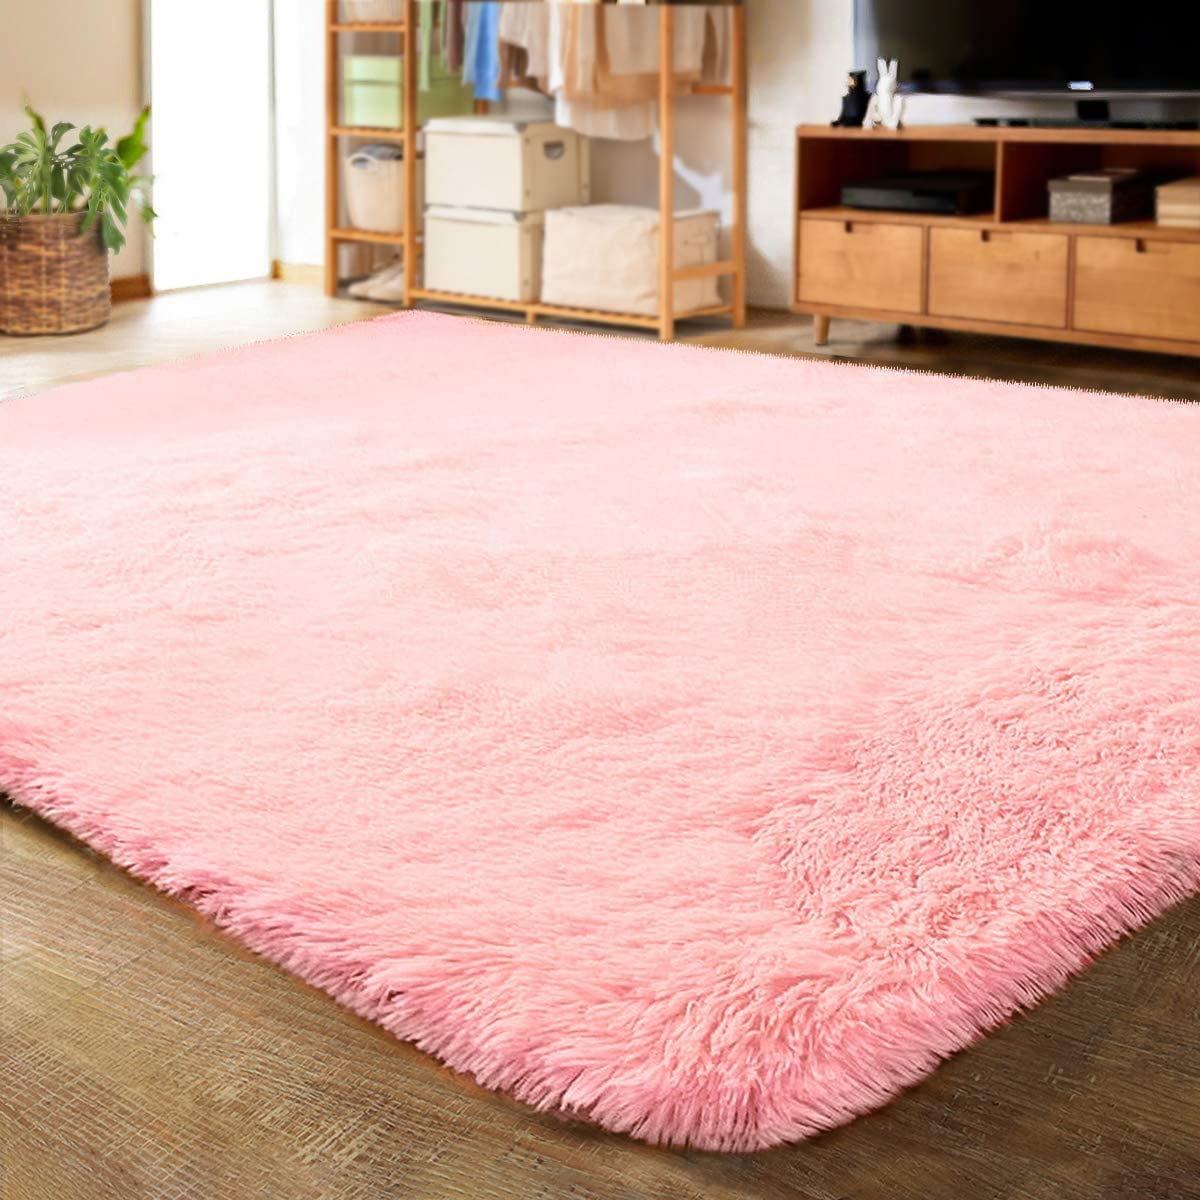 Non-slip Modern Area Rug Living Room Carpet Children Play Mat Tree rings Blanket 